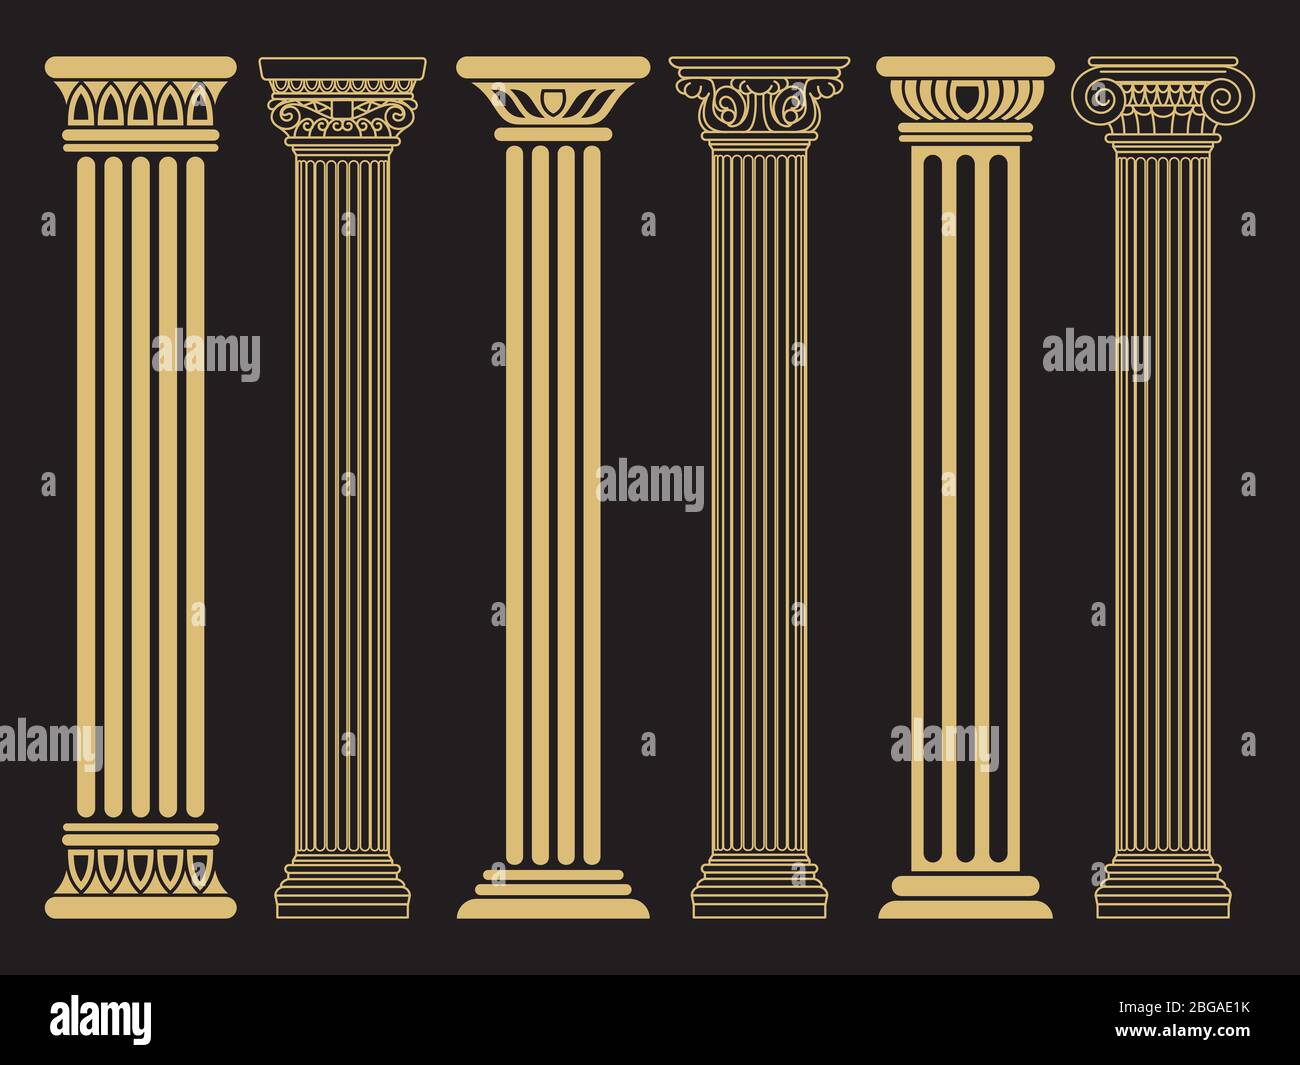 Elegante klassische römische, griechische Architektur Linie und Silhouette Säulen. Vektorgrafik Stock Vektor